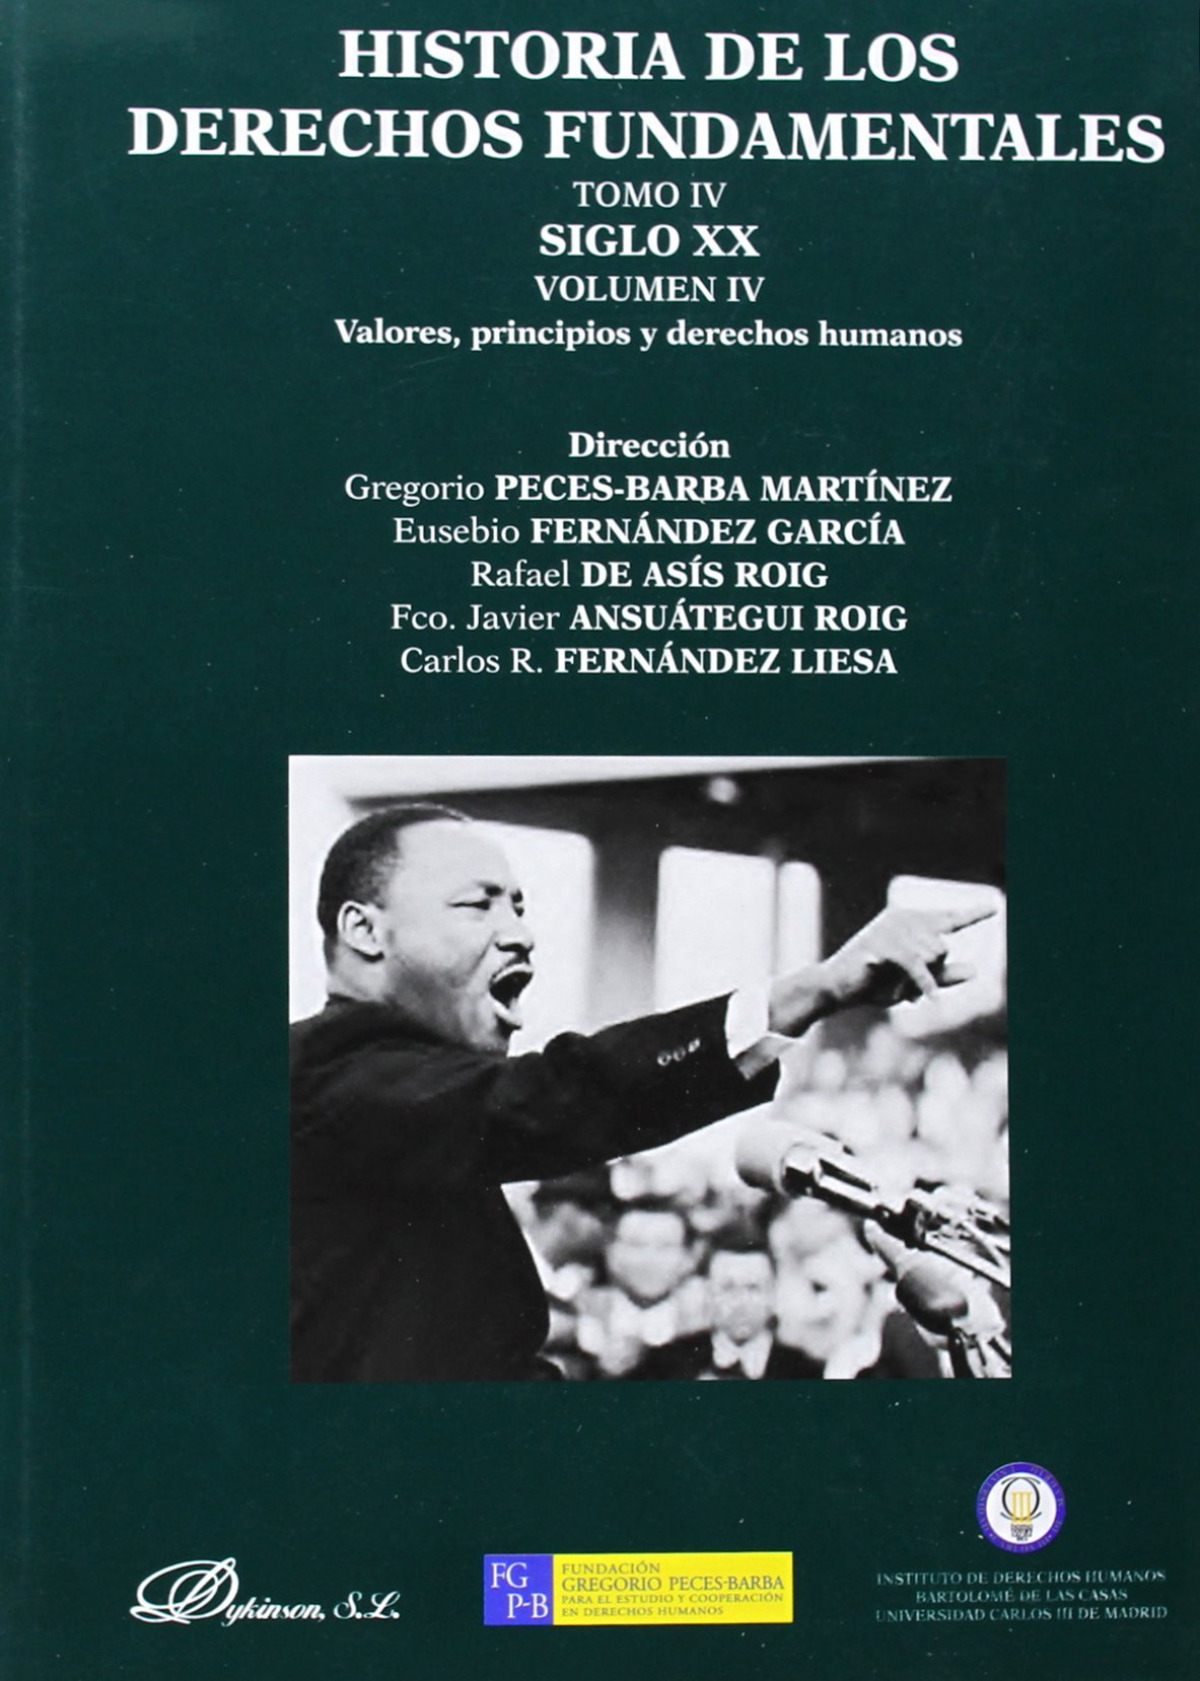 Historia de los derechos fundamentales. Tomo IV. Siglo XX. Volumen IV. - Peces-Barba Martínez, Gregorio